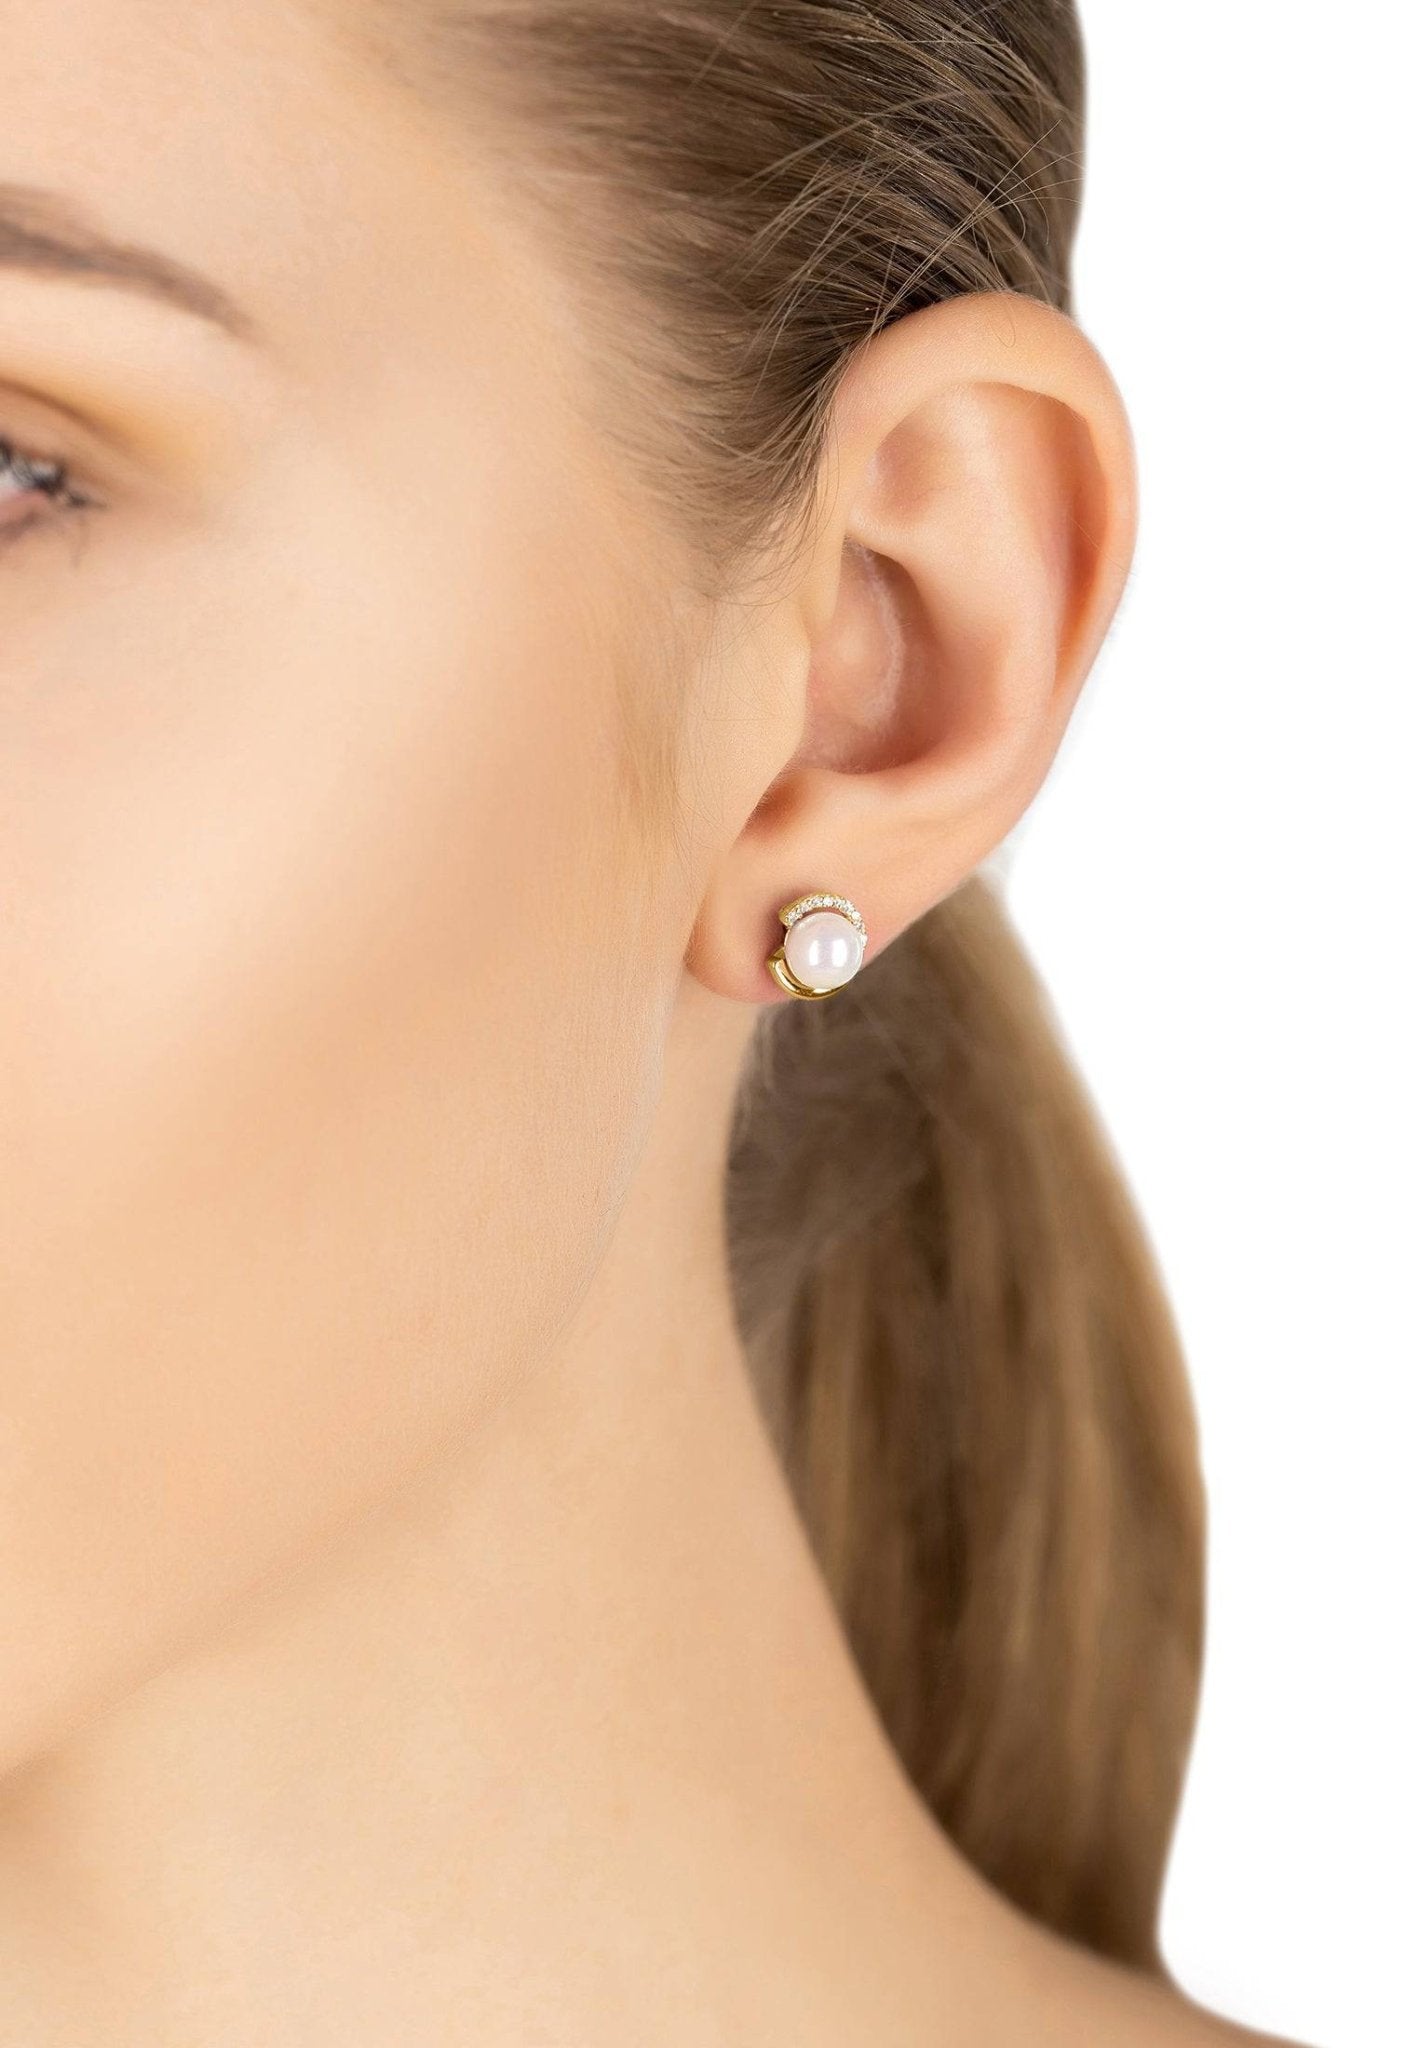 Pearl Halo Stud Earrings Gold - LATELITA Earrings